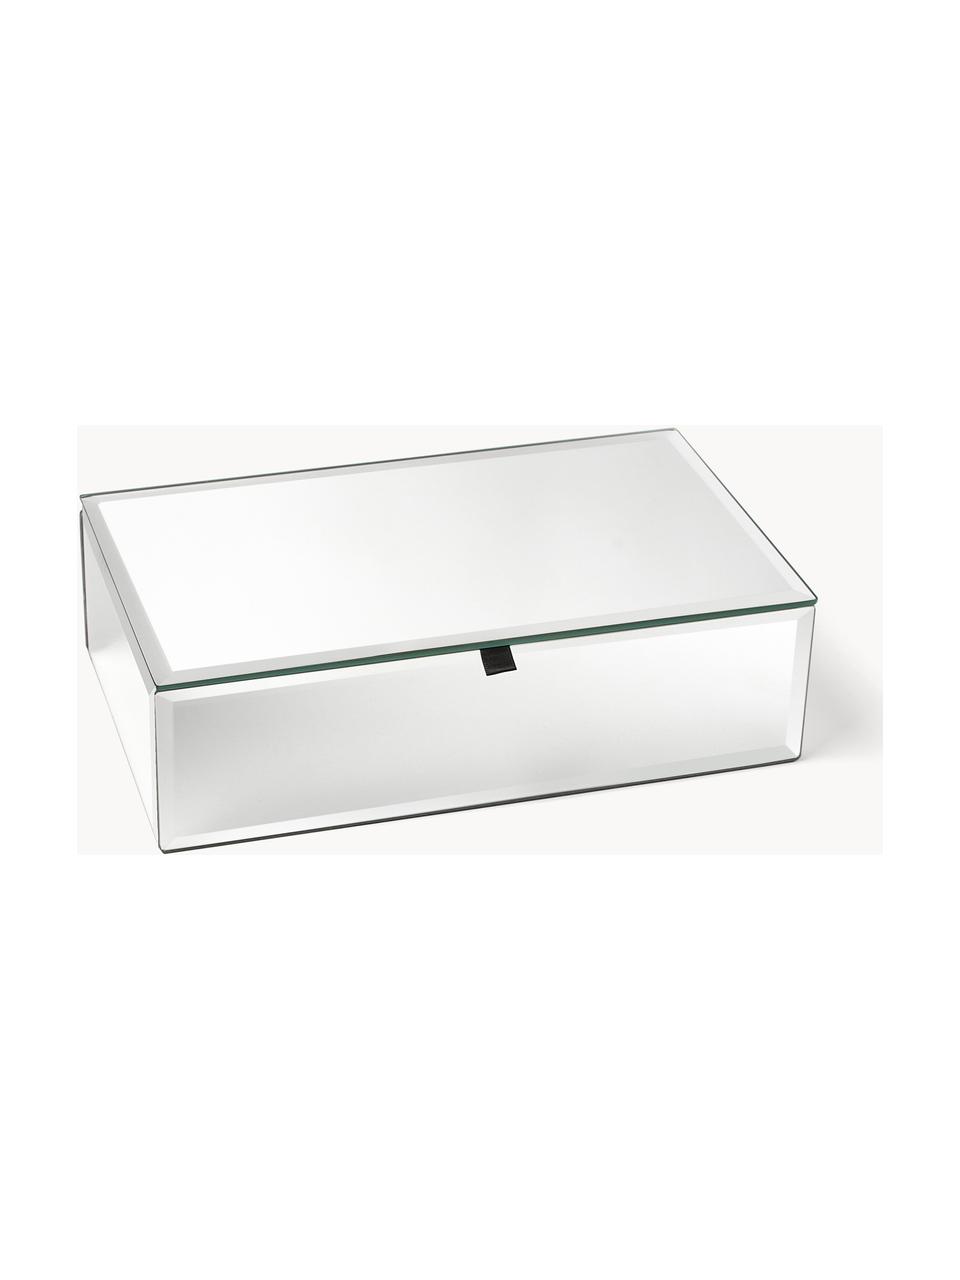 Aufbewahrungsbox Melvin, Außen: Spiegelglas, Innen: Samt, Silberfarben, B 24 x T 14 cm